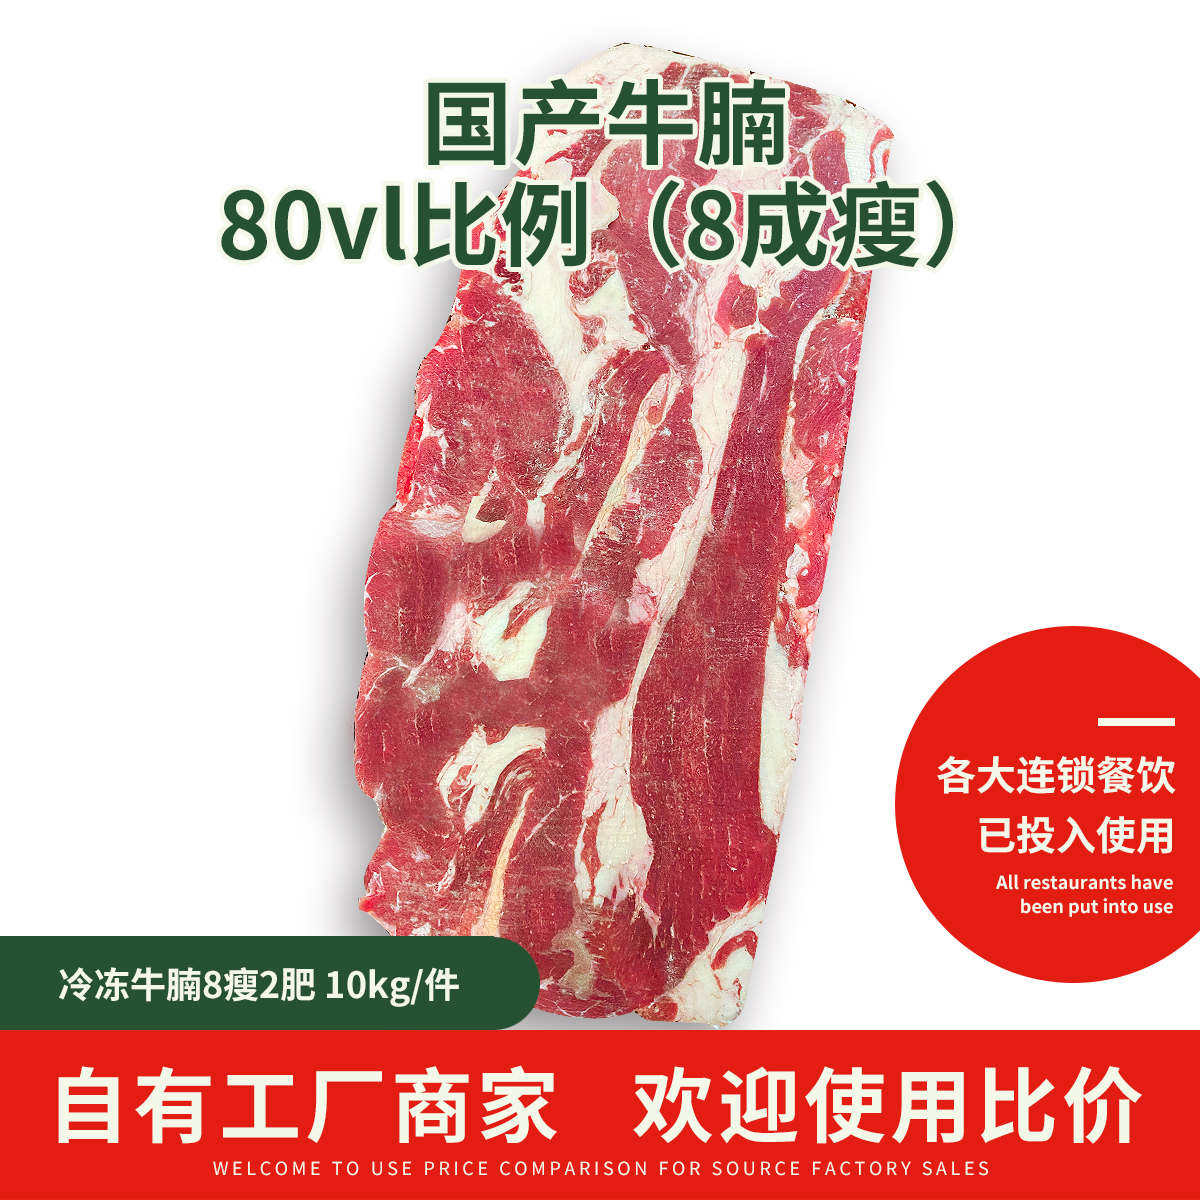 广州非常瘦！2肥8瘦国产牛腩80vl比例 25kg/件